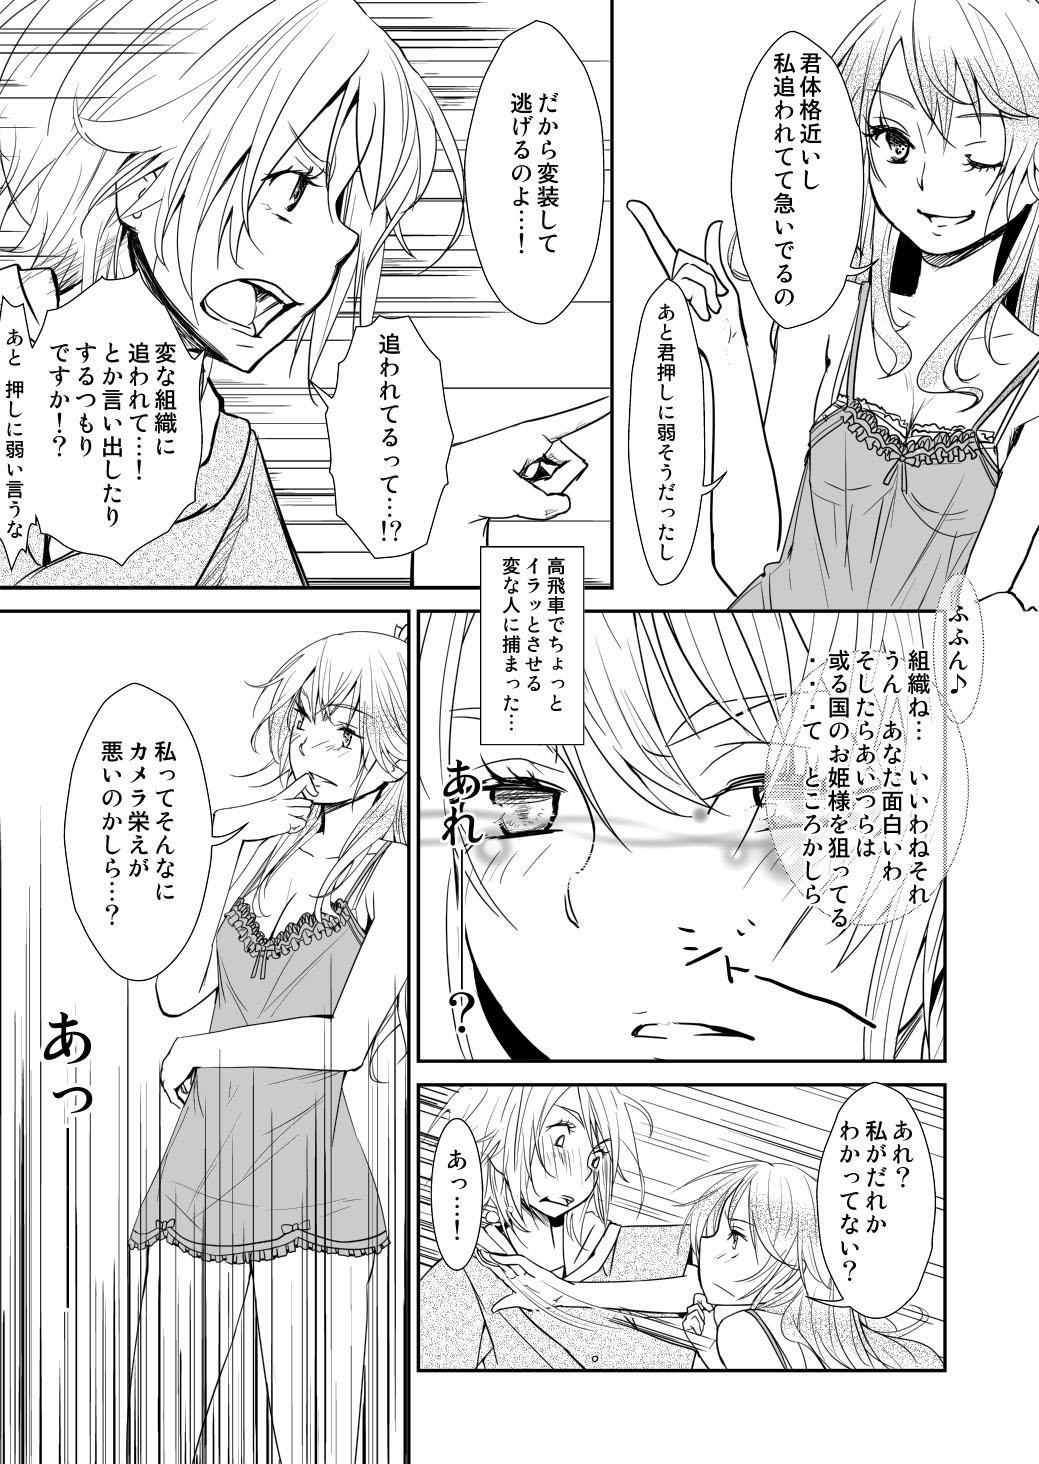 Grandma Yakusoku no Sora to Kimigaita Basho 1 ~ 2 Cut - Page 9